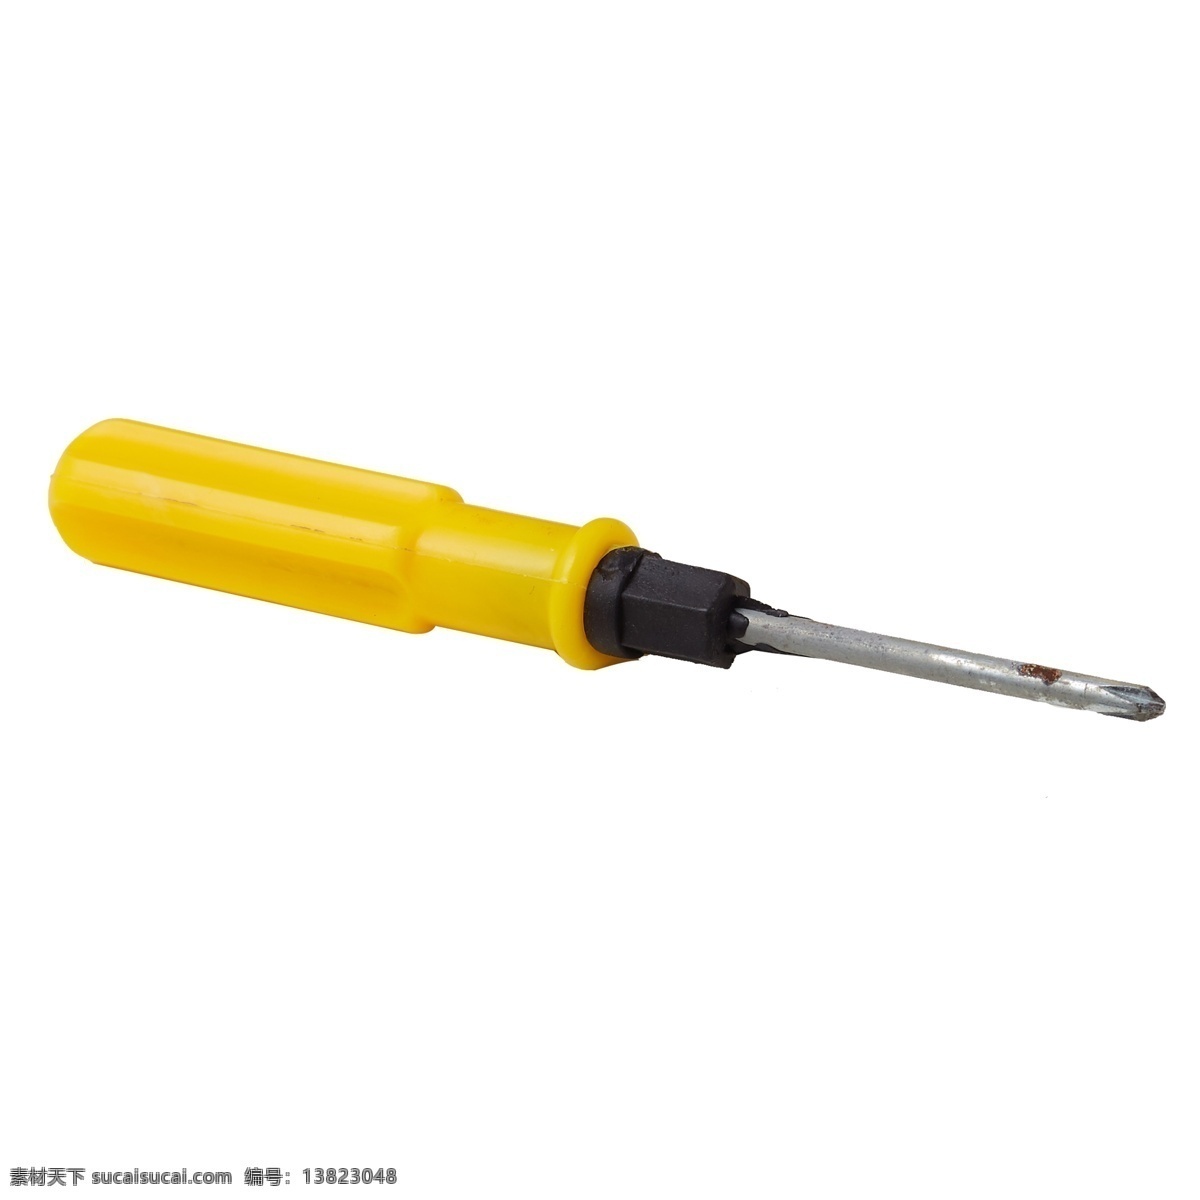 黄色 的卡 通 改锥 螺丝刀 金属 装修工具 生活工具 工具用品 修理工具 小工具